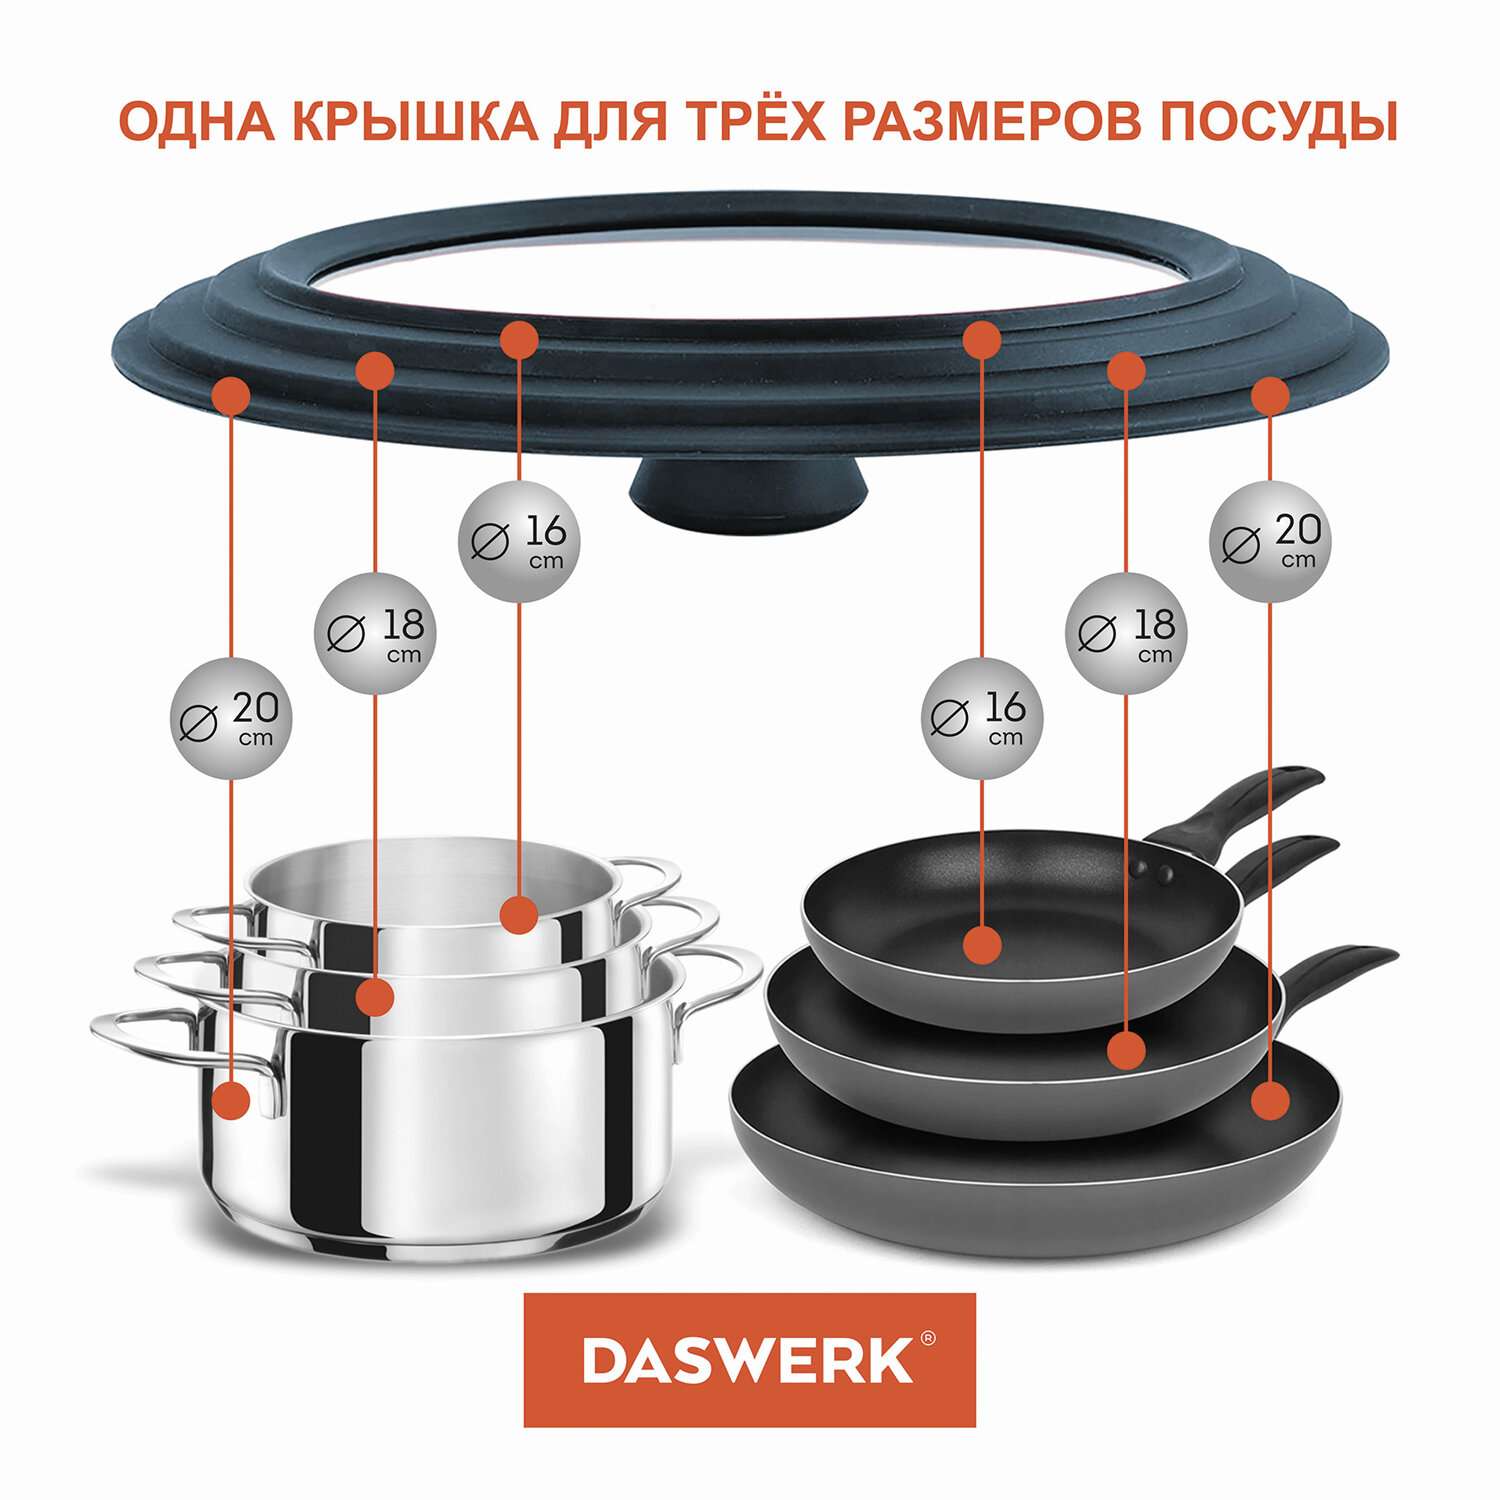 Крышка для сковороды DASWERK кастрюли посуды универсальная 3 размера 16-18-20см - фото 4